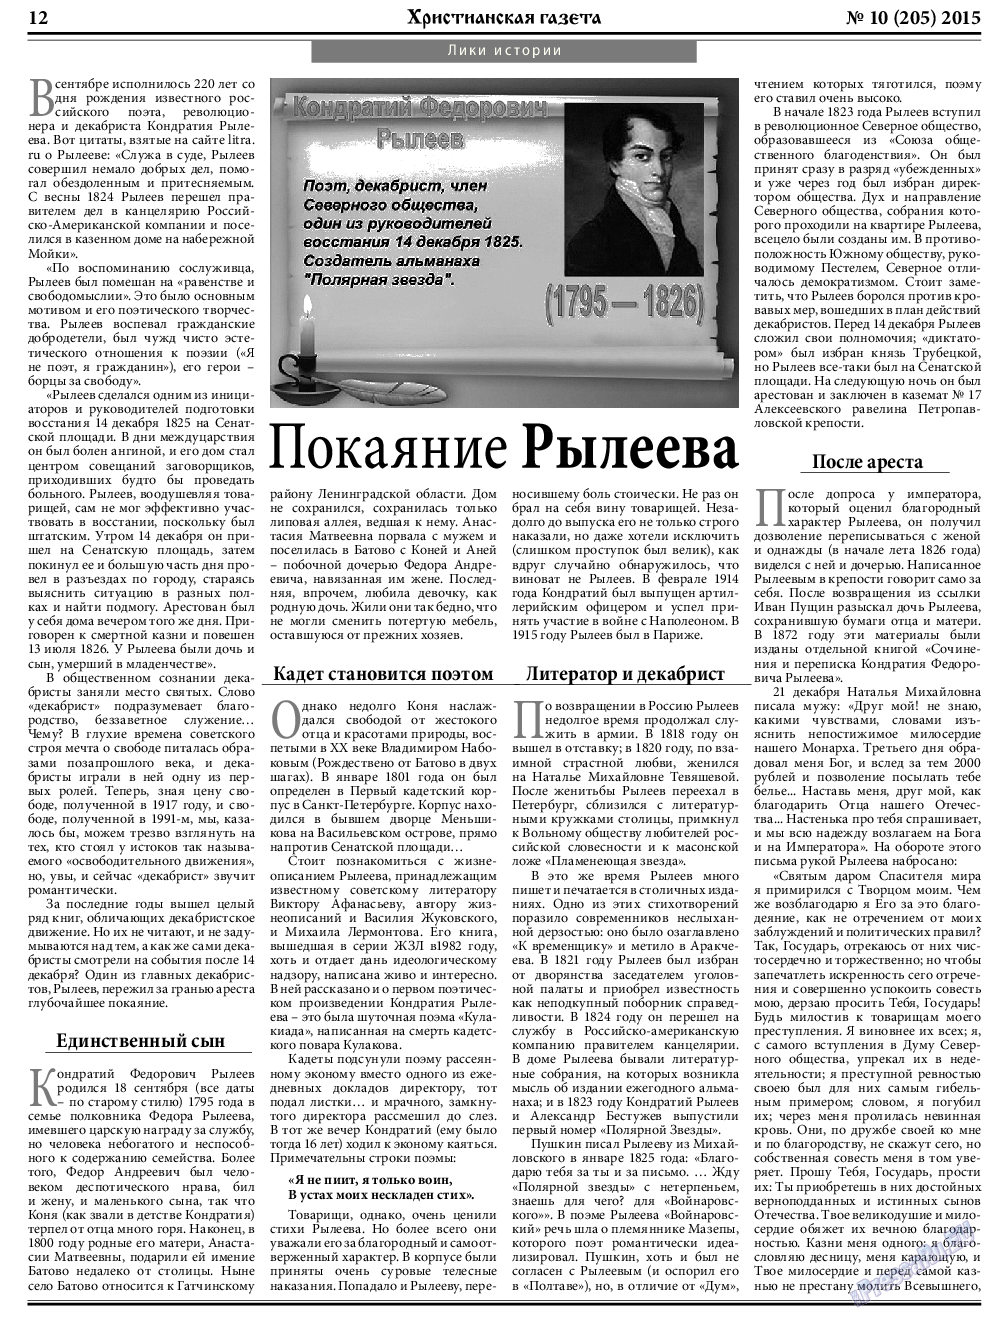 Христианская газета, газета. 2015 №10 стр.12